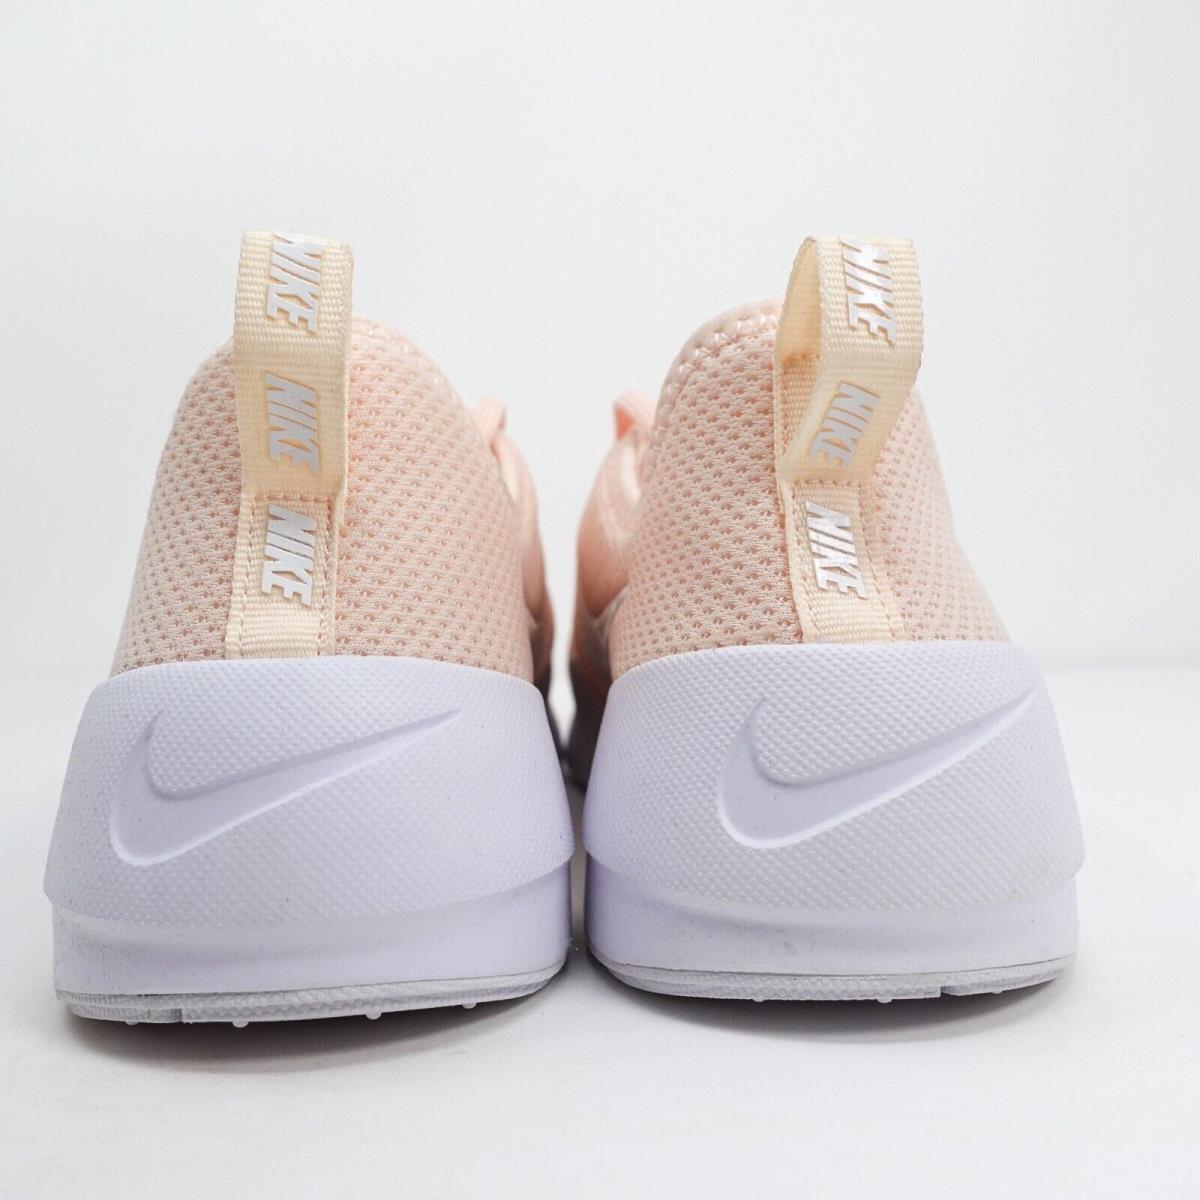 Nike shoes Ashin Modern - Pink, White 6